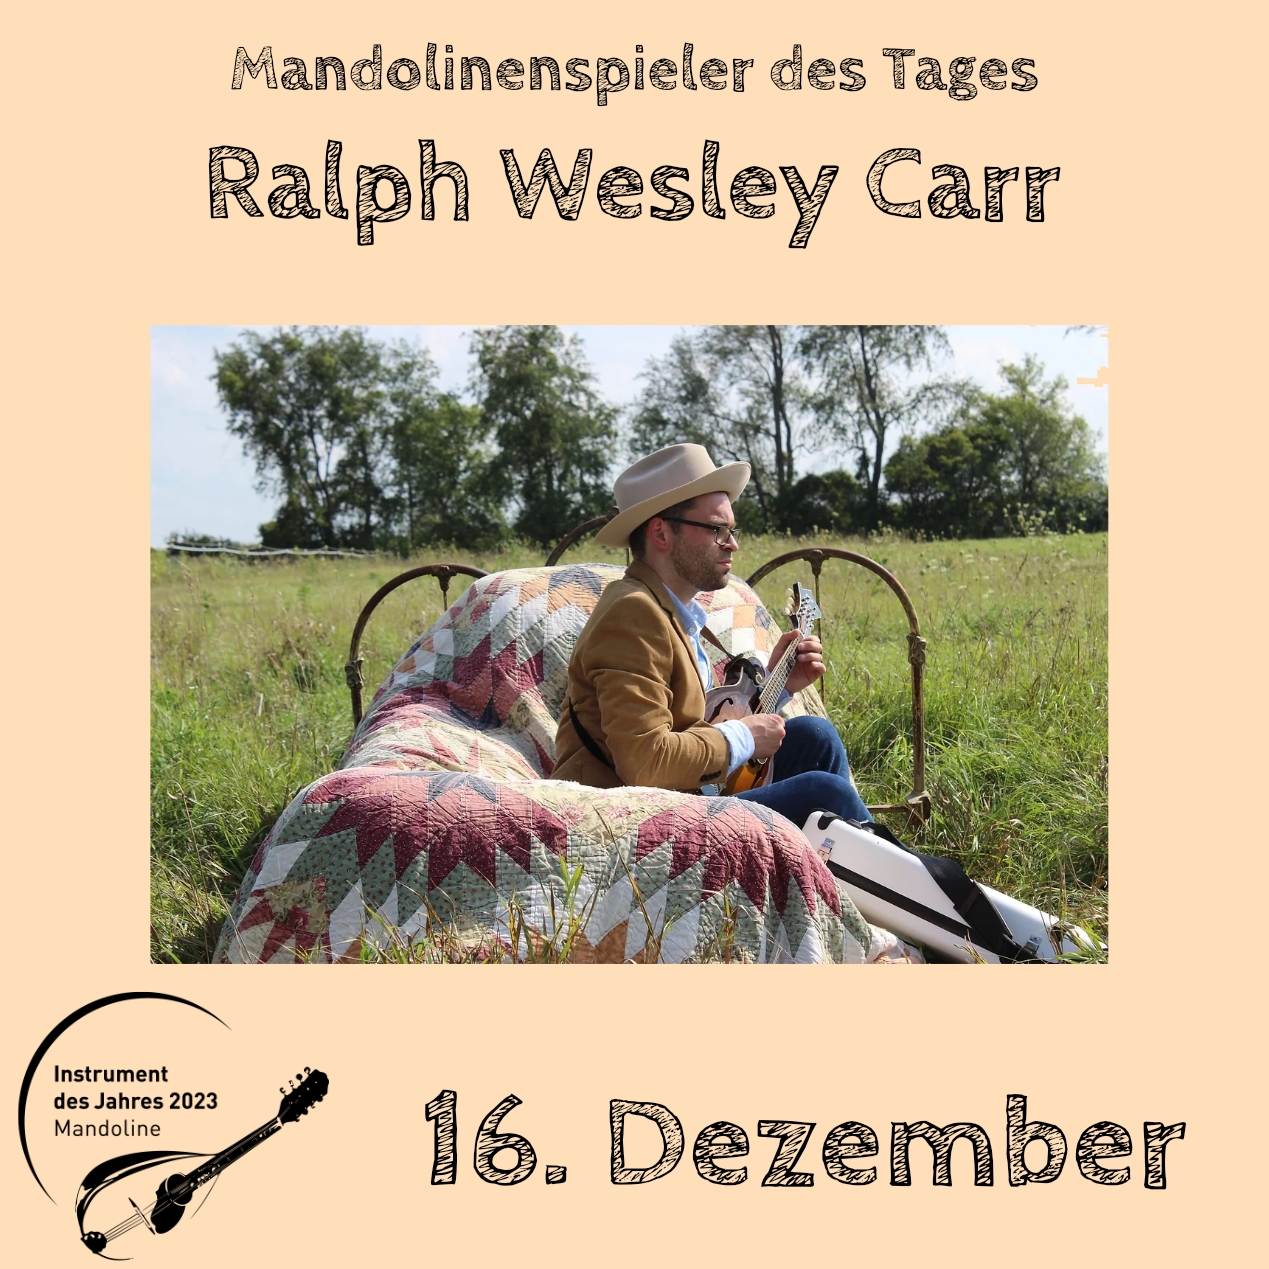 16. Dezember - Ralph Lesley Carr Instrument des Jahres 2023 Mandolinenspieler Mandolinenspielerin des Tages